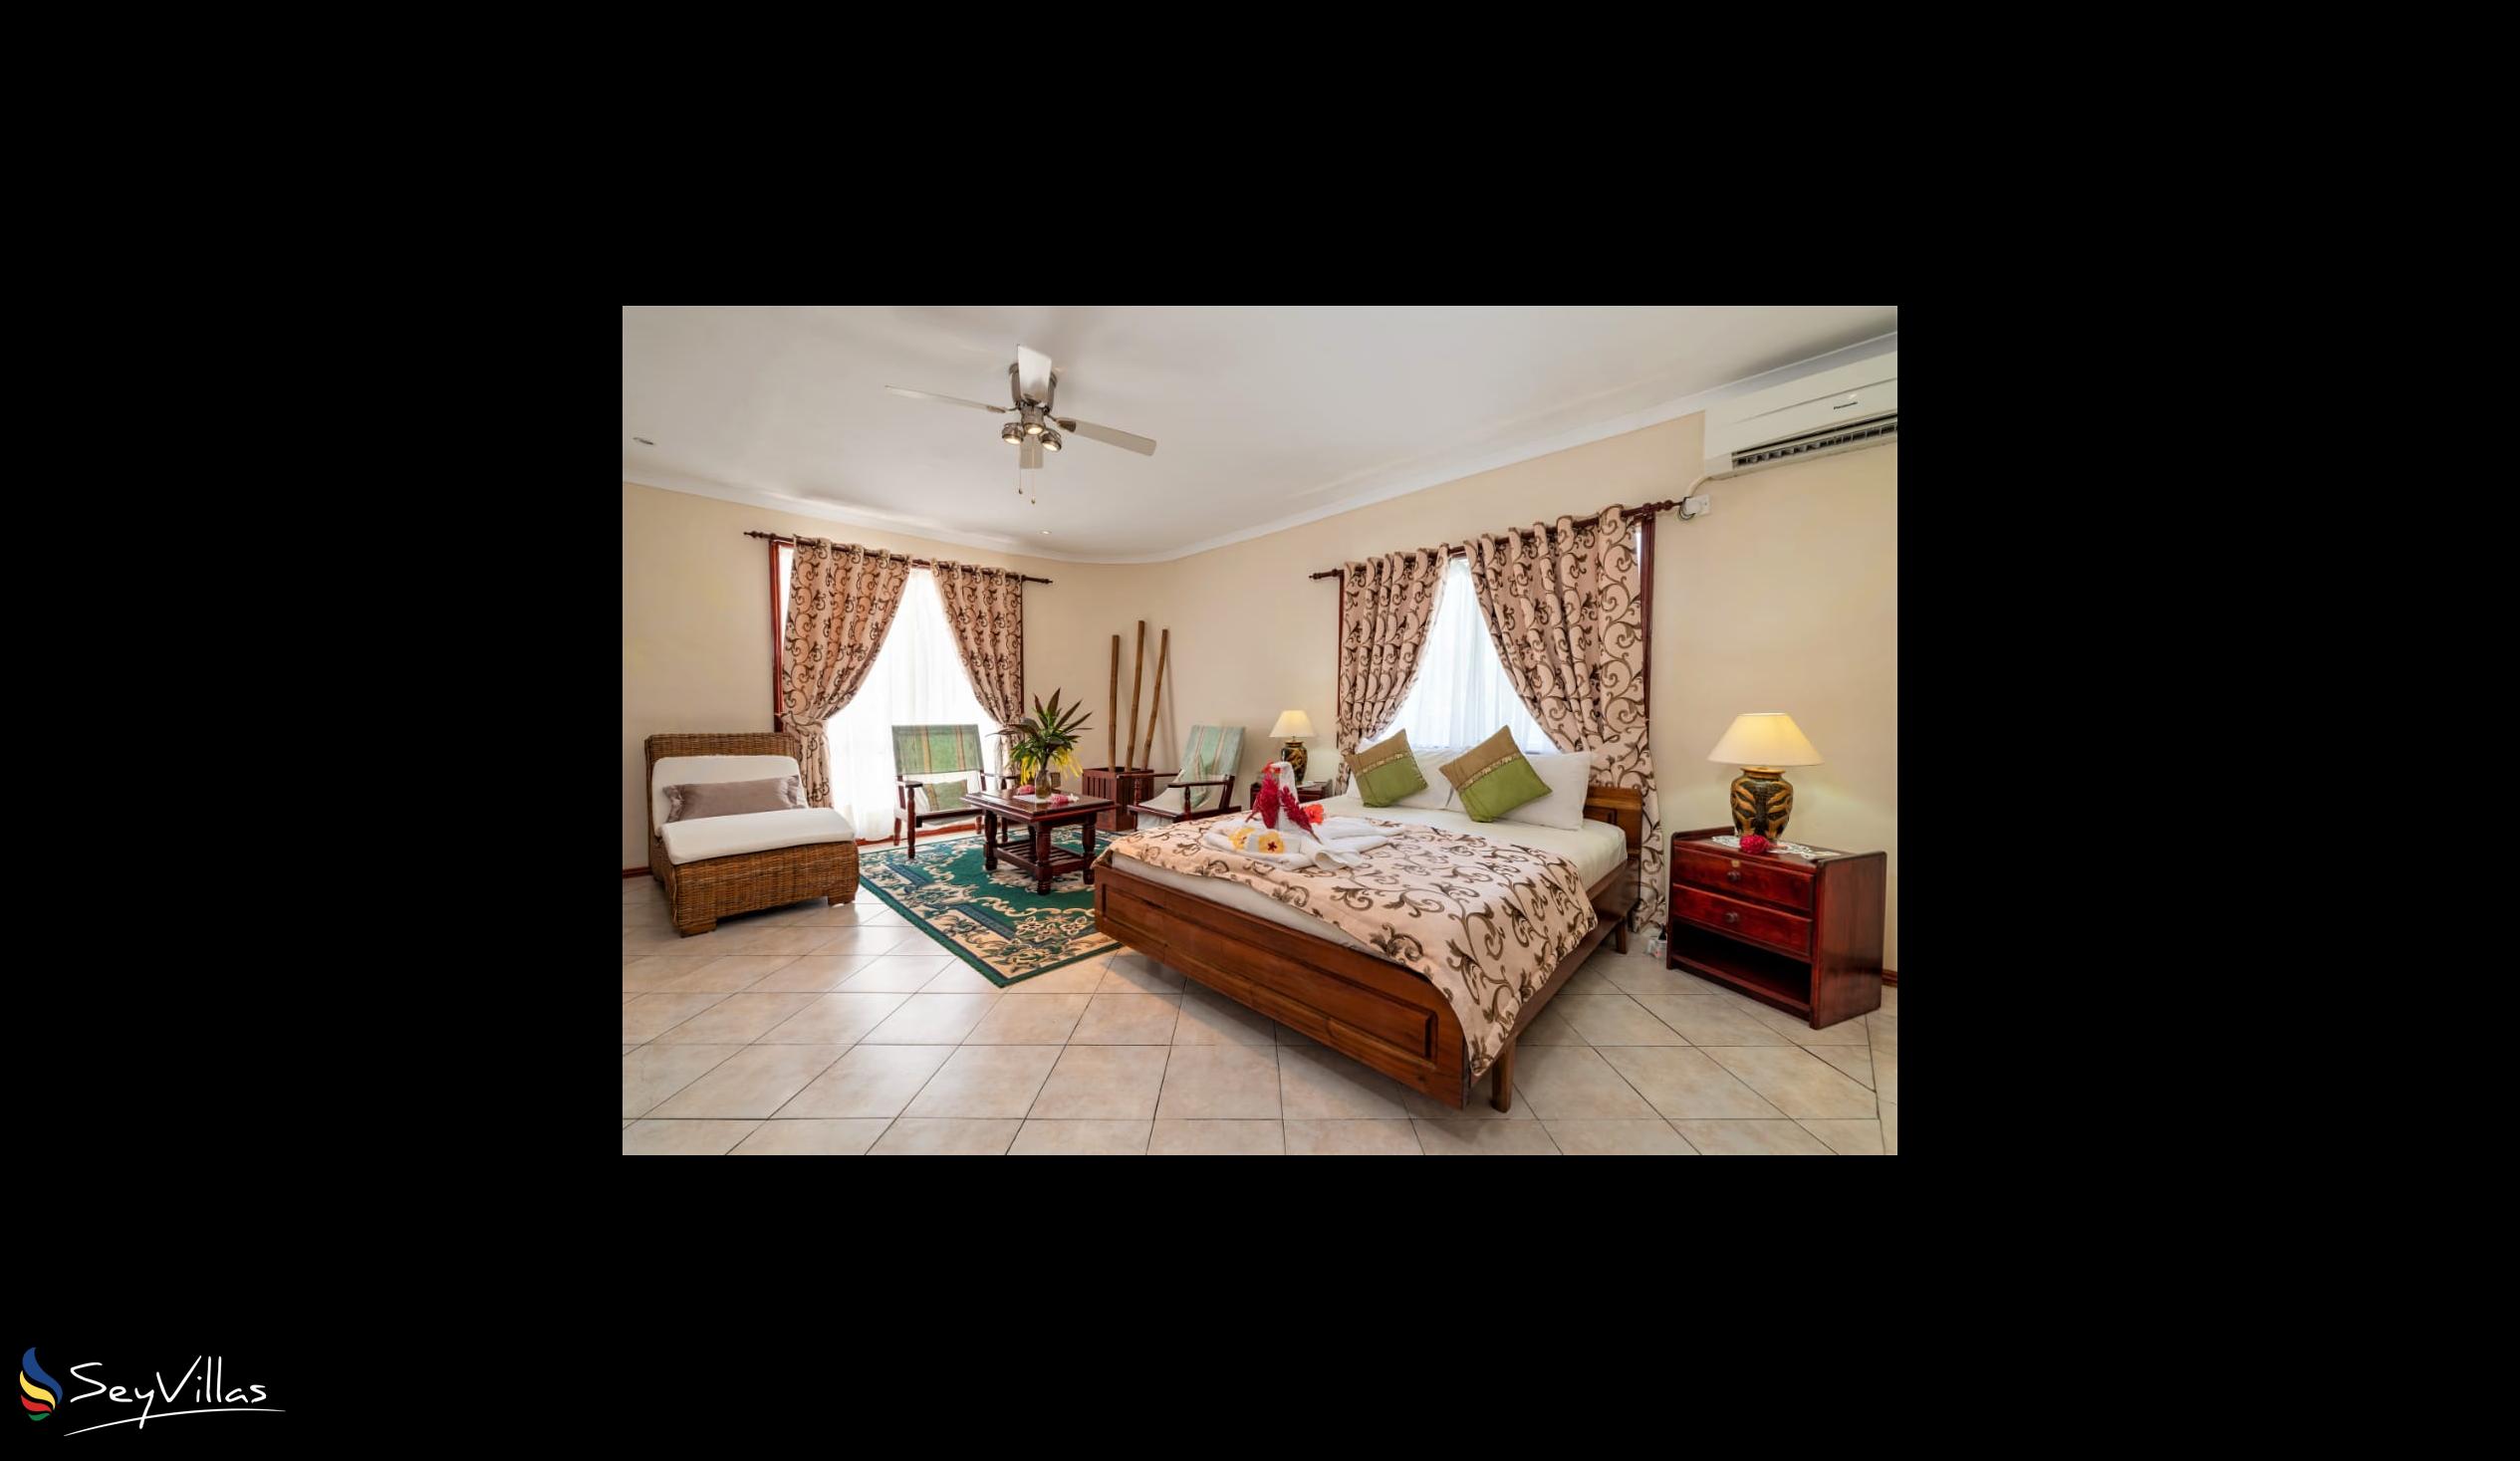 Foto 42: Carana Hilltop Villa - Chambre Luxury - Mahé (Seychelles)